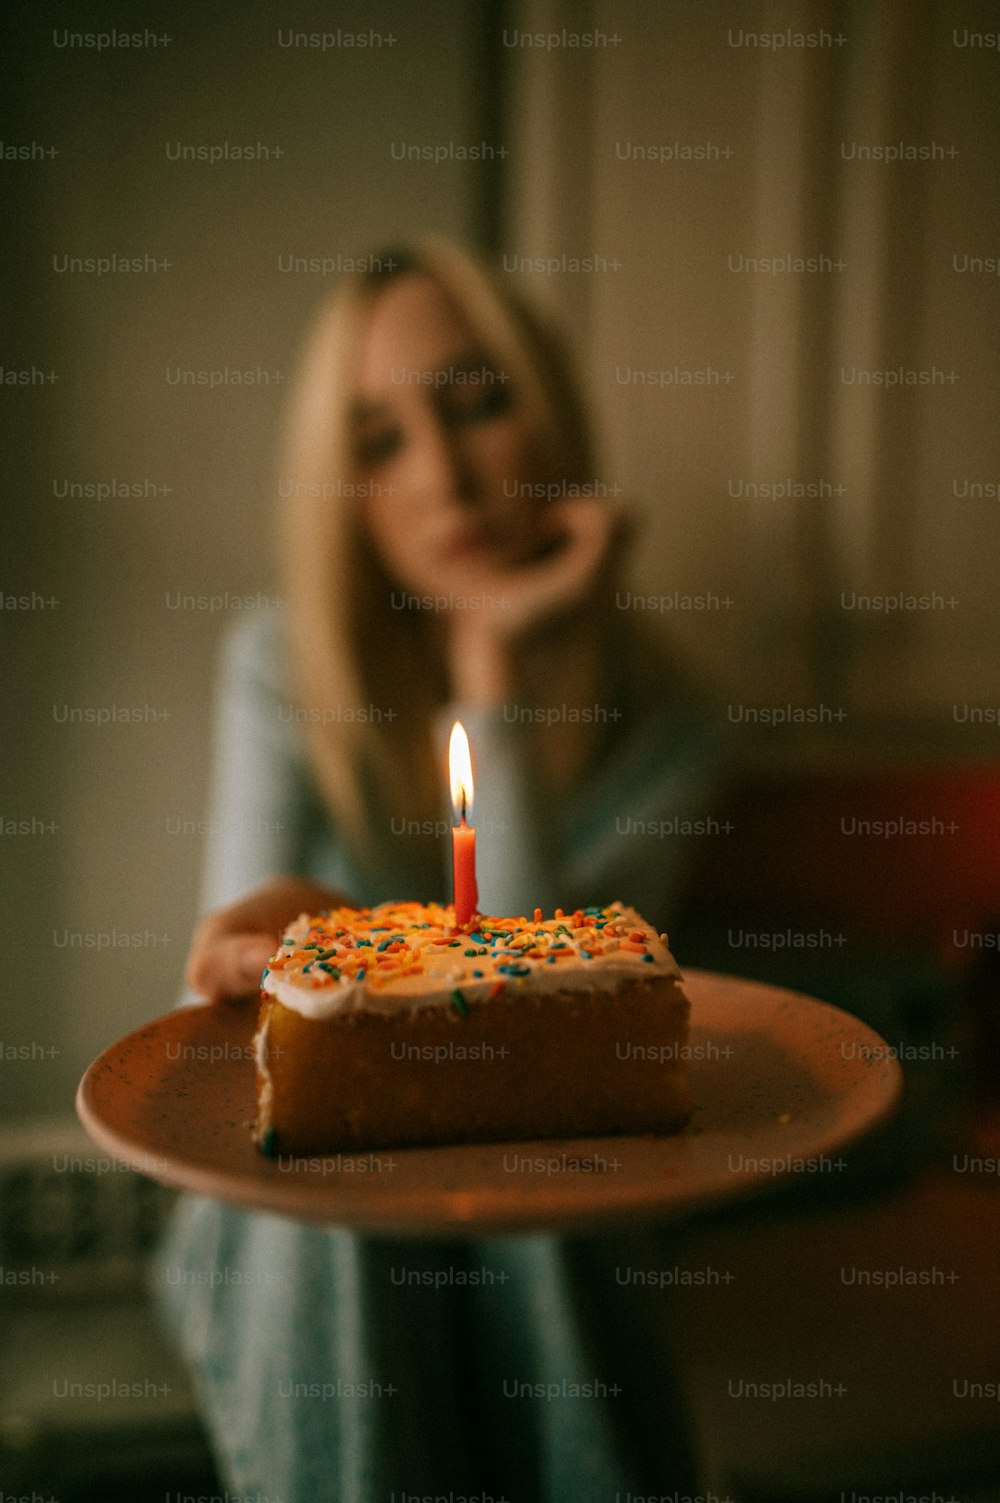 케이크 한 조각이 담긴 접시를 들고 있는 여자